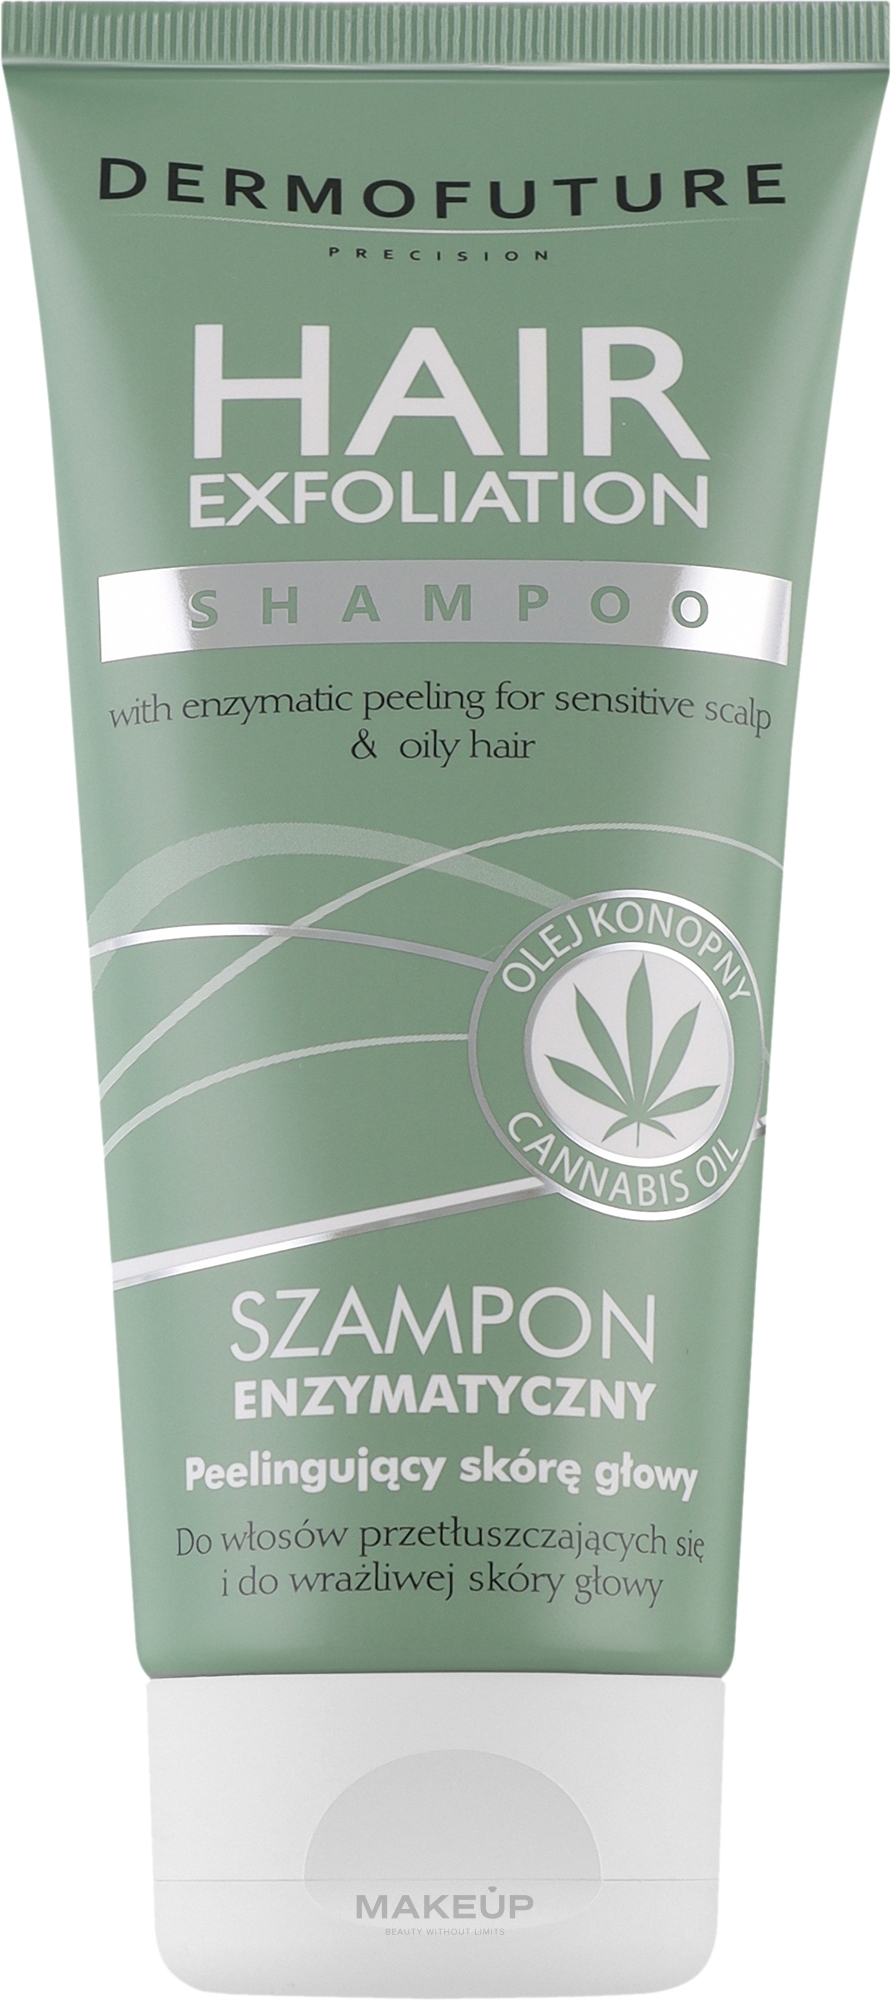 Szampon enzymatyczny peelingujący skórę głowy - DermoFuture Hair Exfoliation Shampoo — Zdjęcie 200 ml